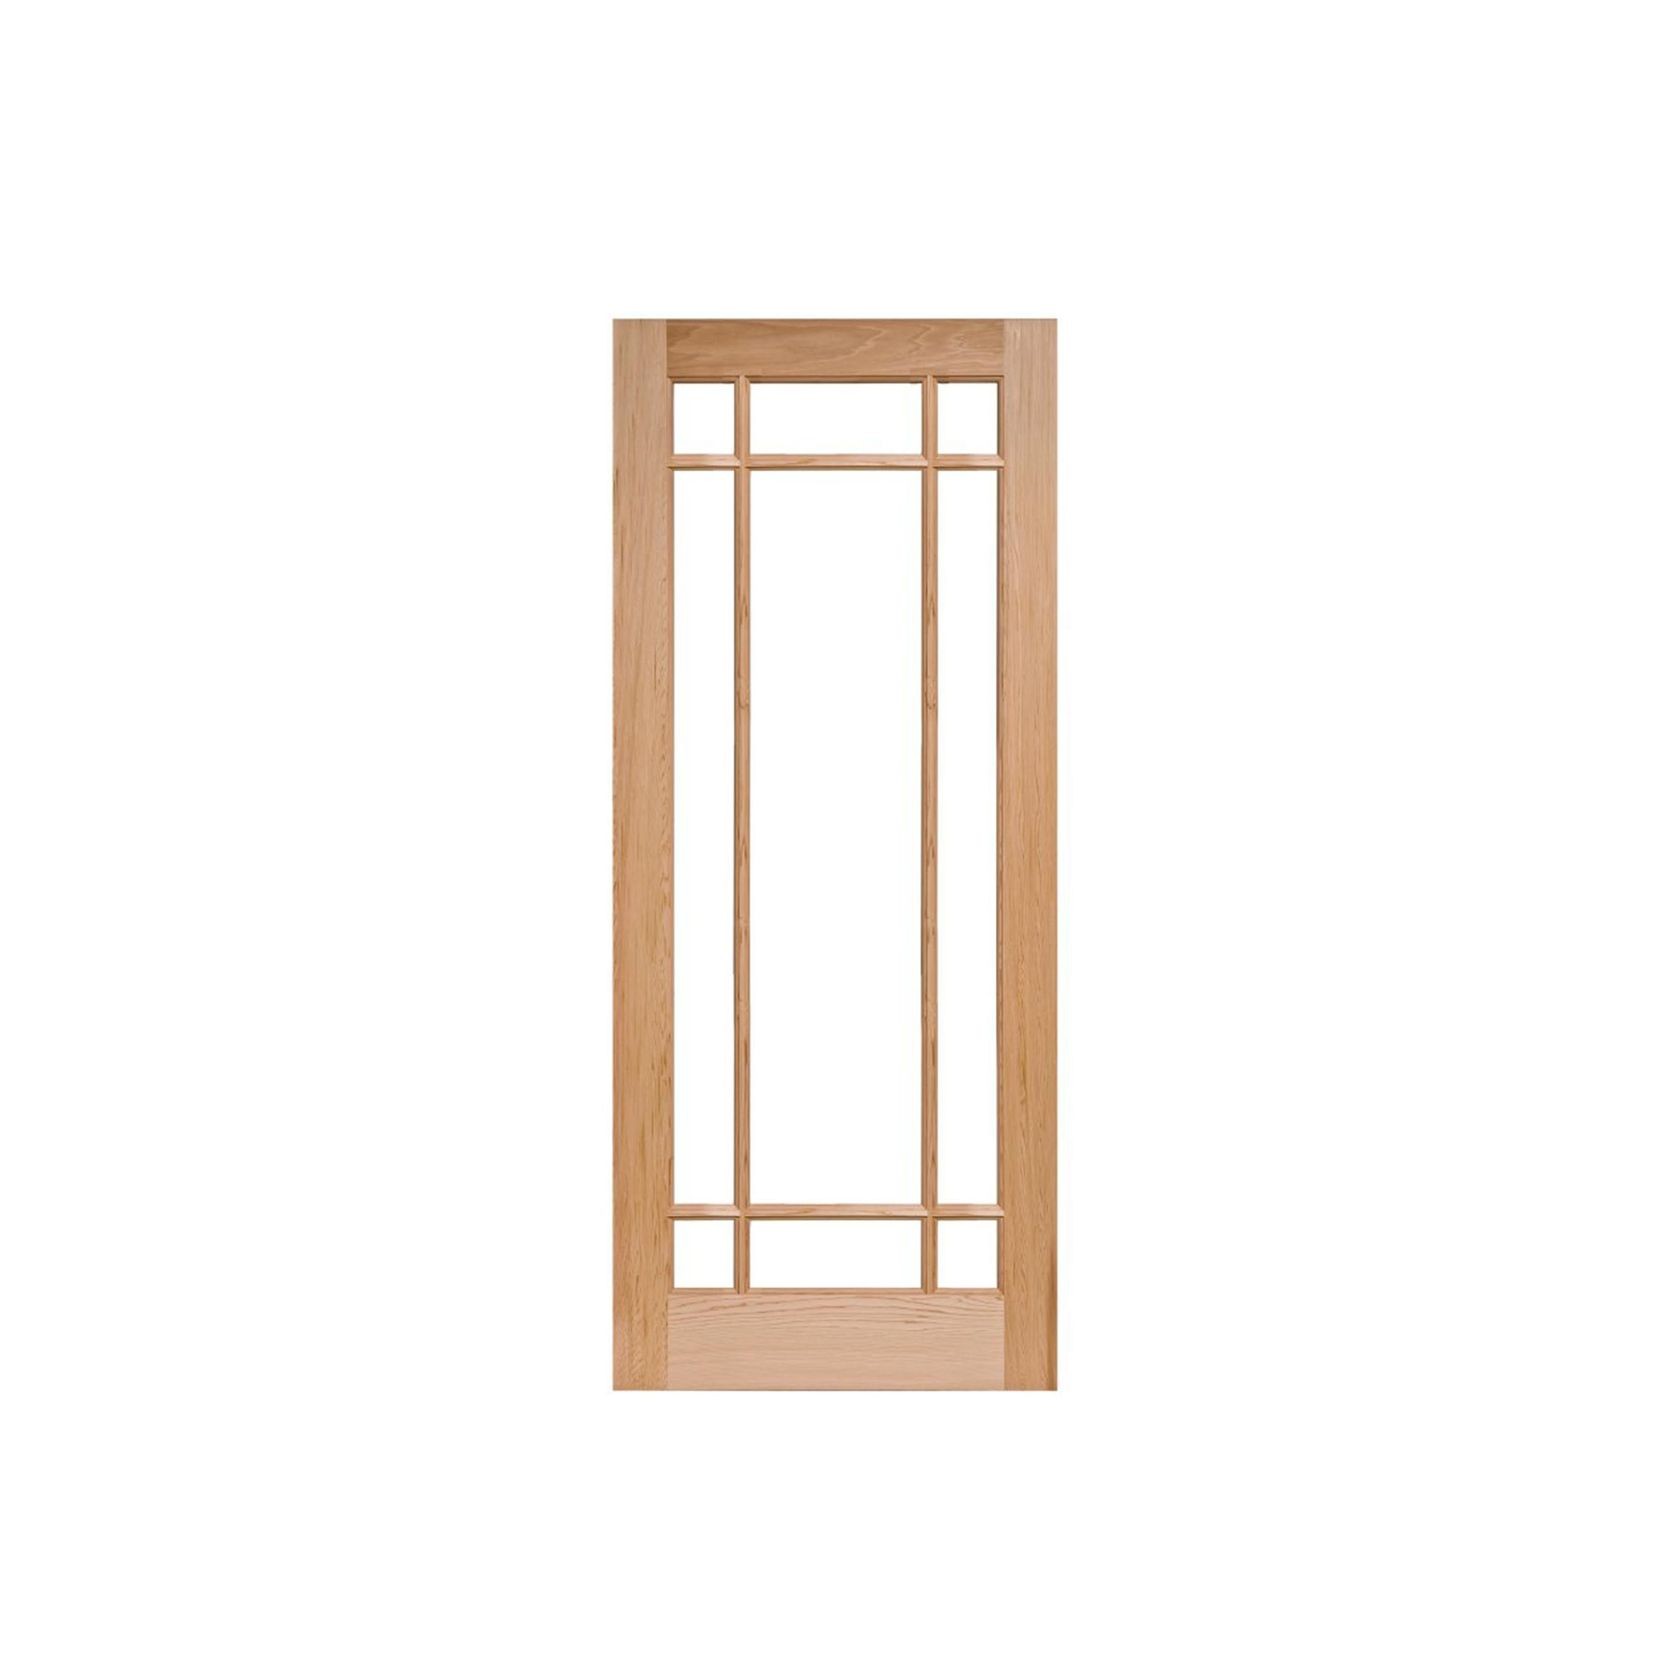 IF9 Solid Wood Door gallery detail image